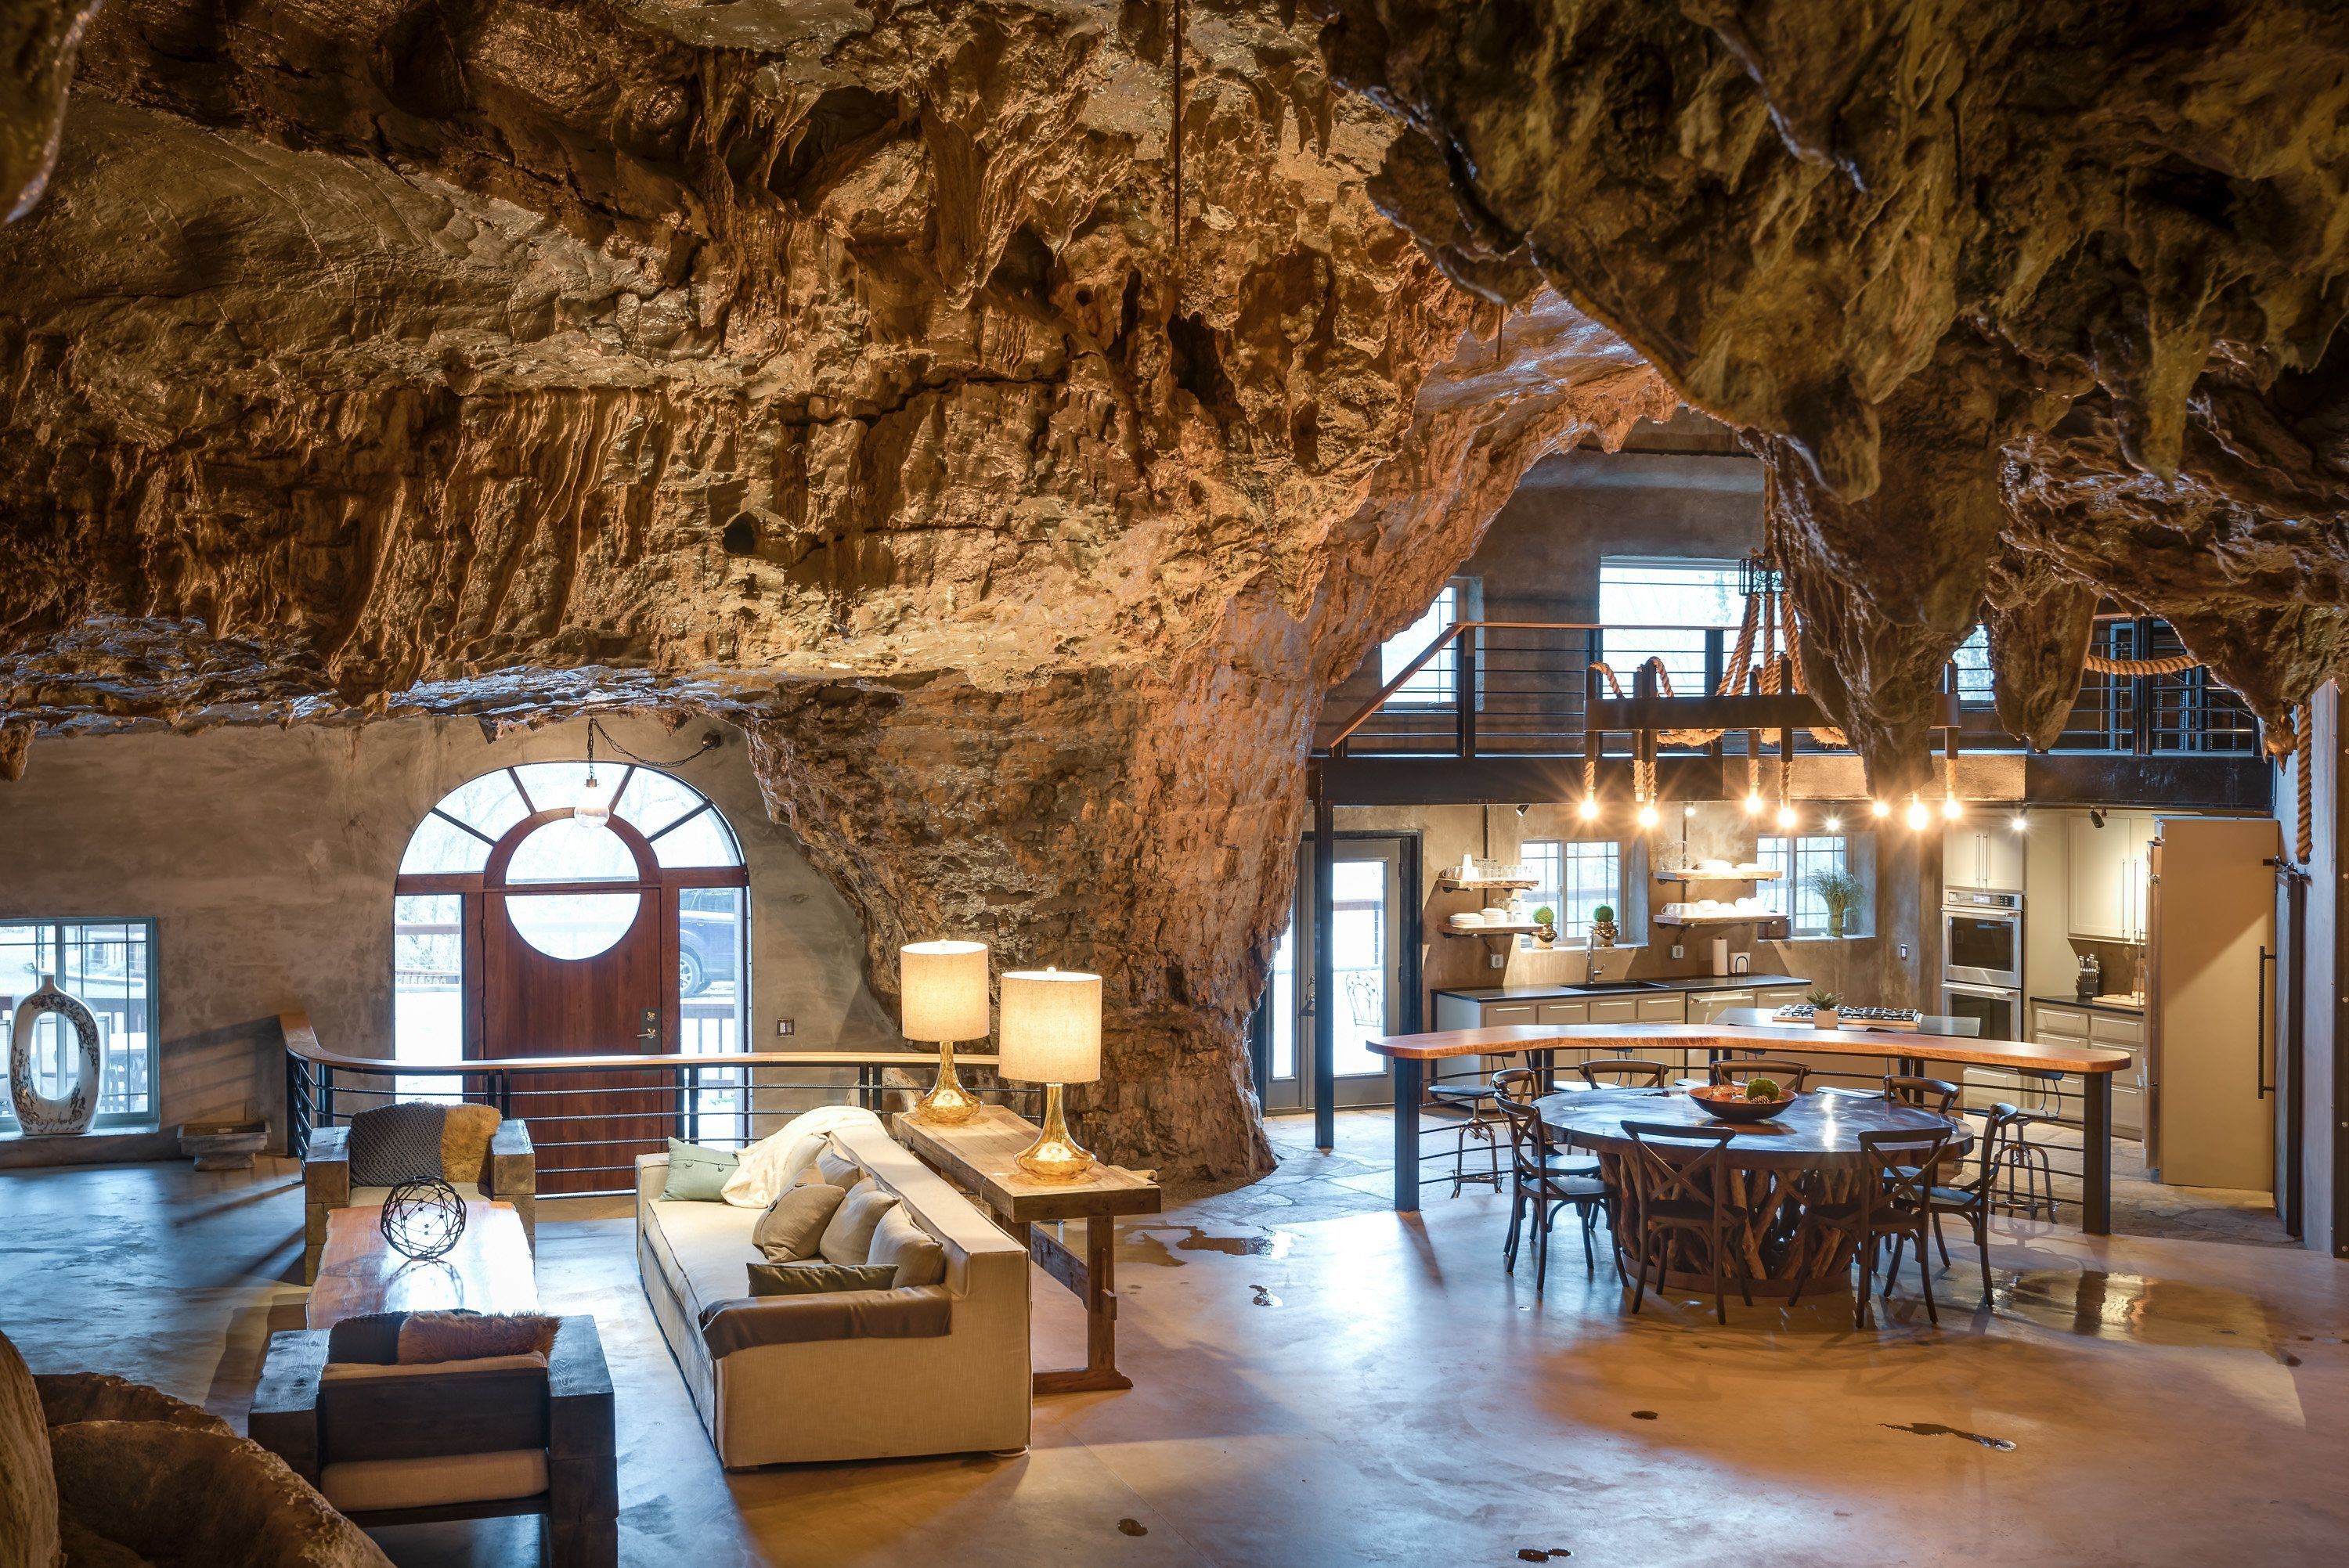 Гослинг домик под скалой. Гостиница Beckham Creek Cave Lodge. Beckham Creek Cave Lodge, США, Арканзас. Пещерный дворец Cave Palace Ranch, Юта, США. Дом в пещере.